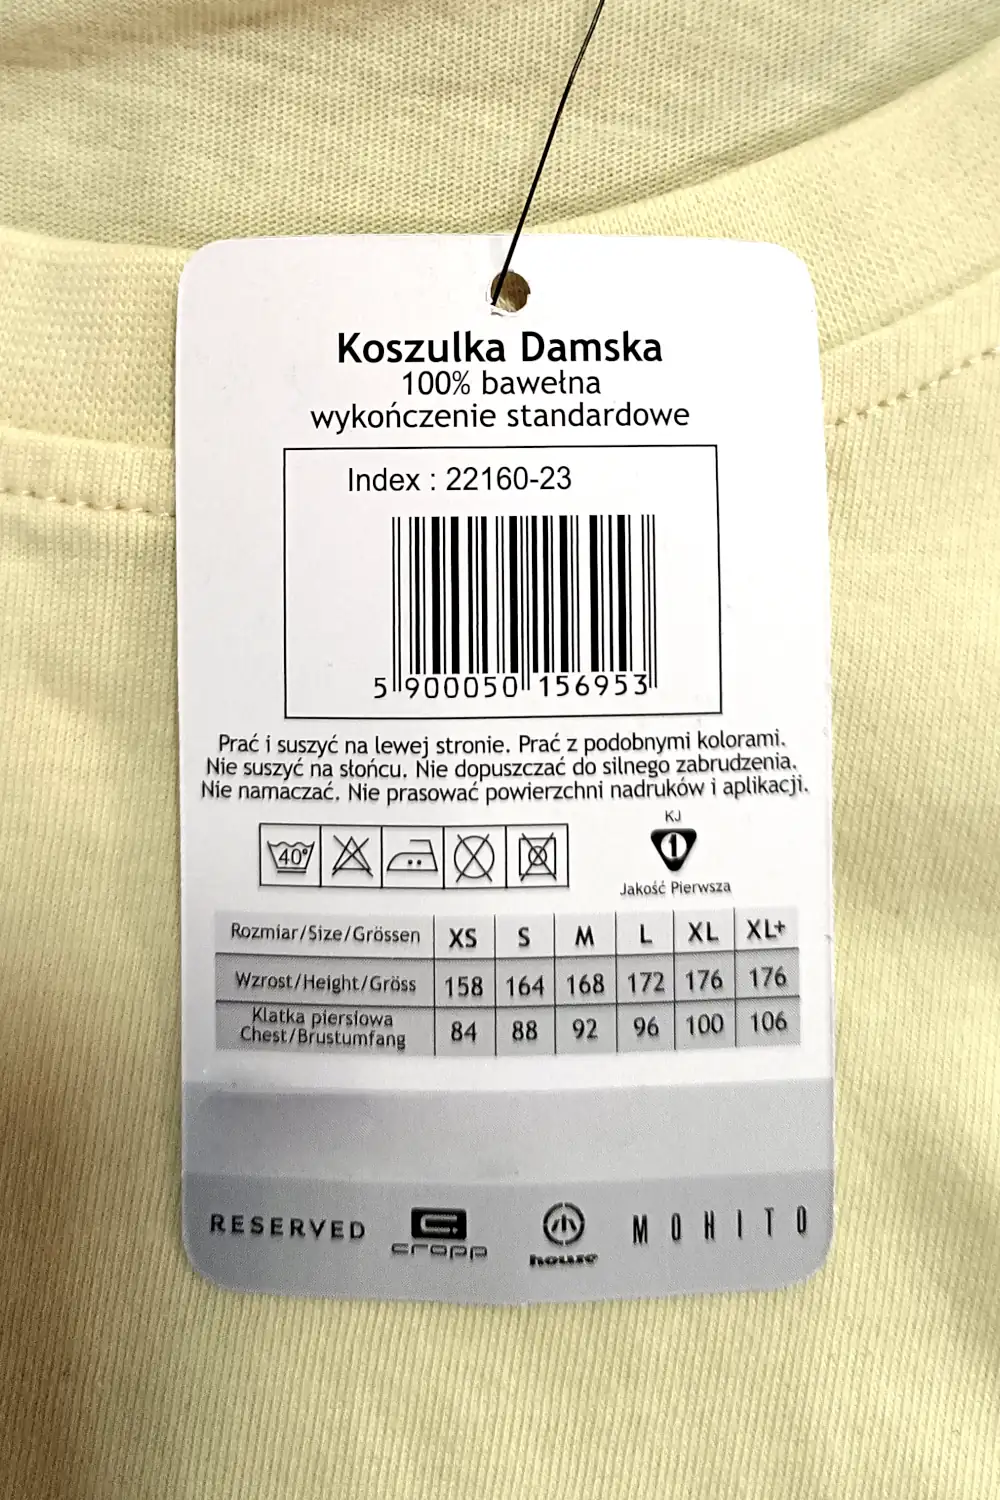 Koszulka bawe艂niana - autorski nadruk | zfragmentow.pl